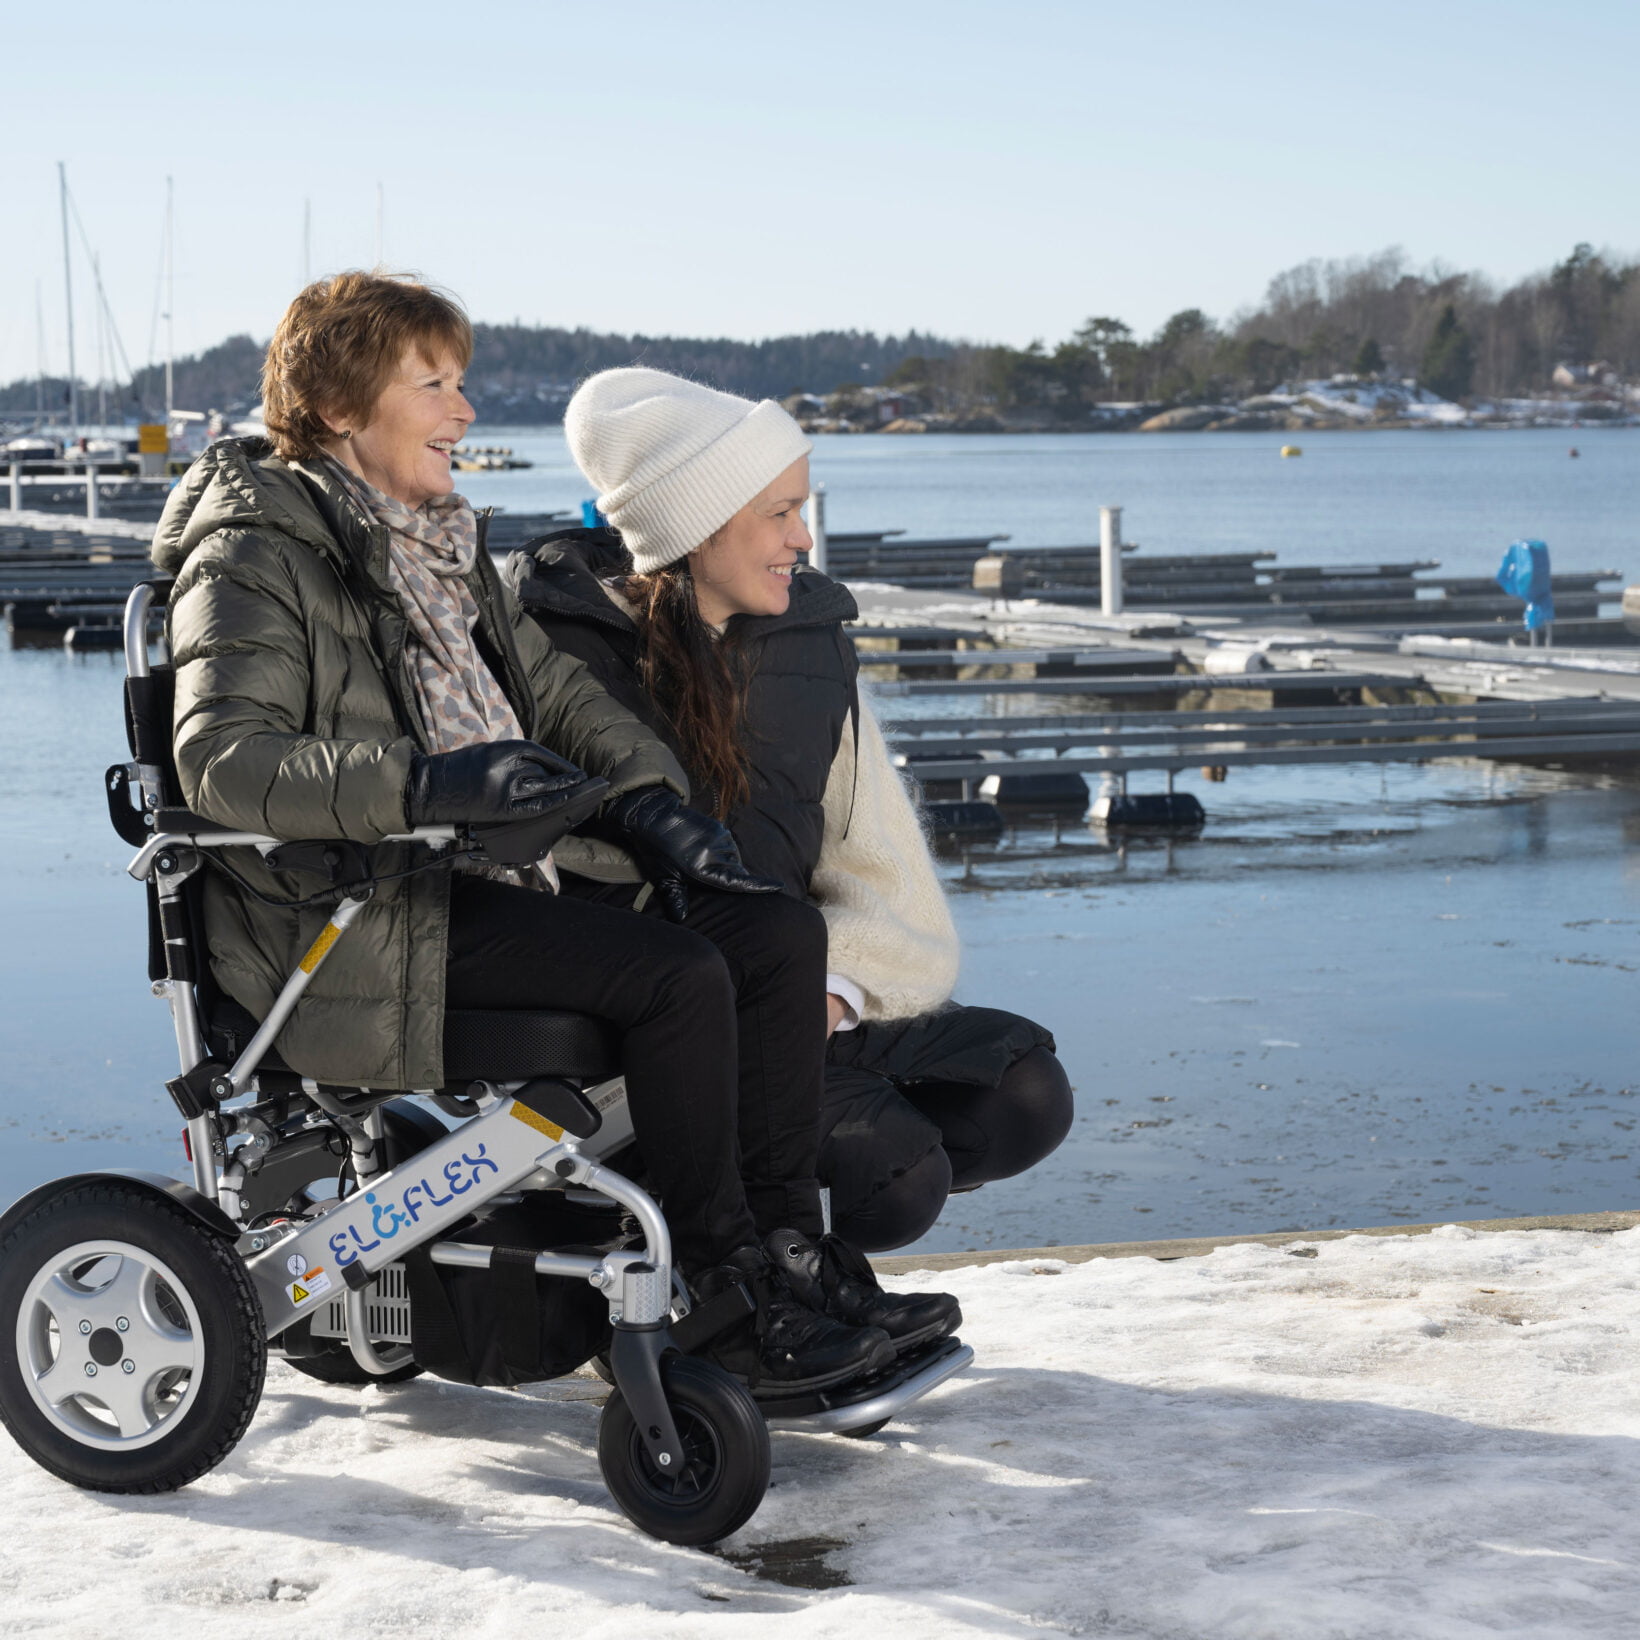 Berit og Aleksandra er på brygga i Son. Berit sitter i en elektrisk rullestol. Aleksandra har satt seg ned på huk ved siden av Berit. De ser bortover på noe. Det er snø på brygga, og du ser båthavnen i bakgrunnen.